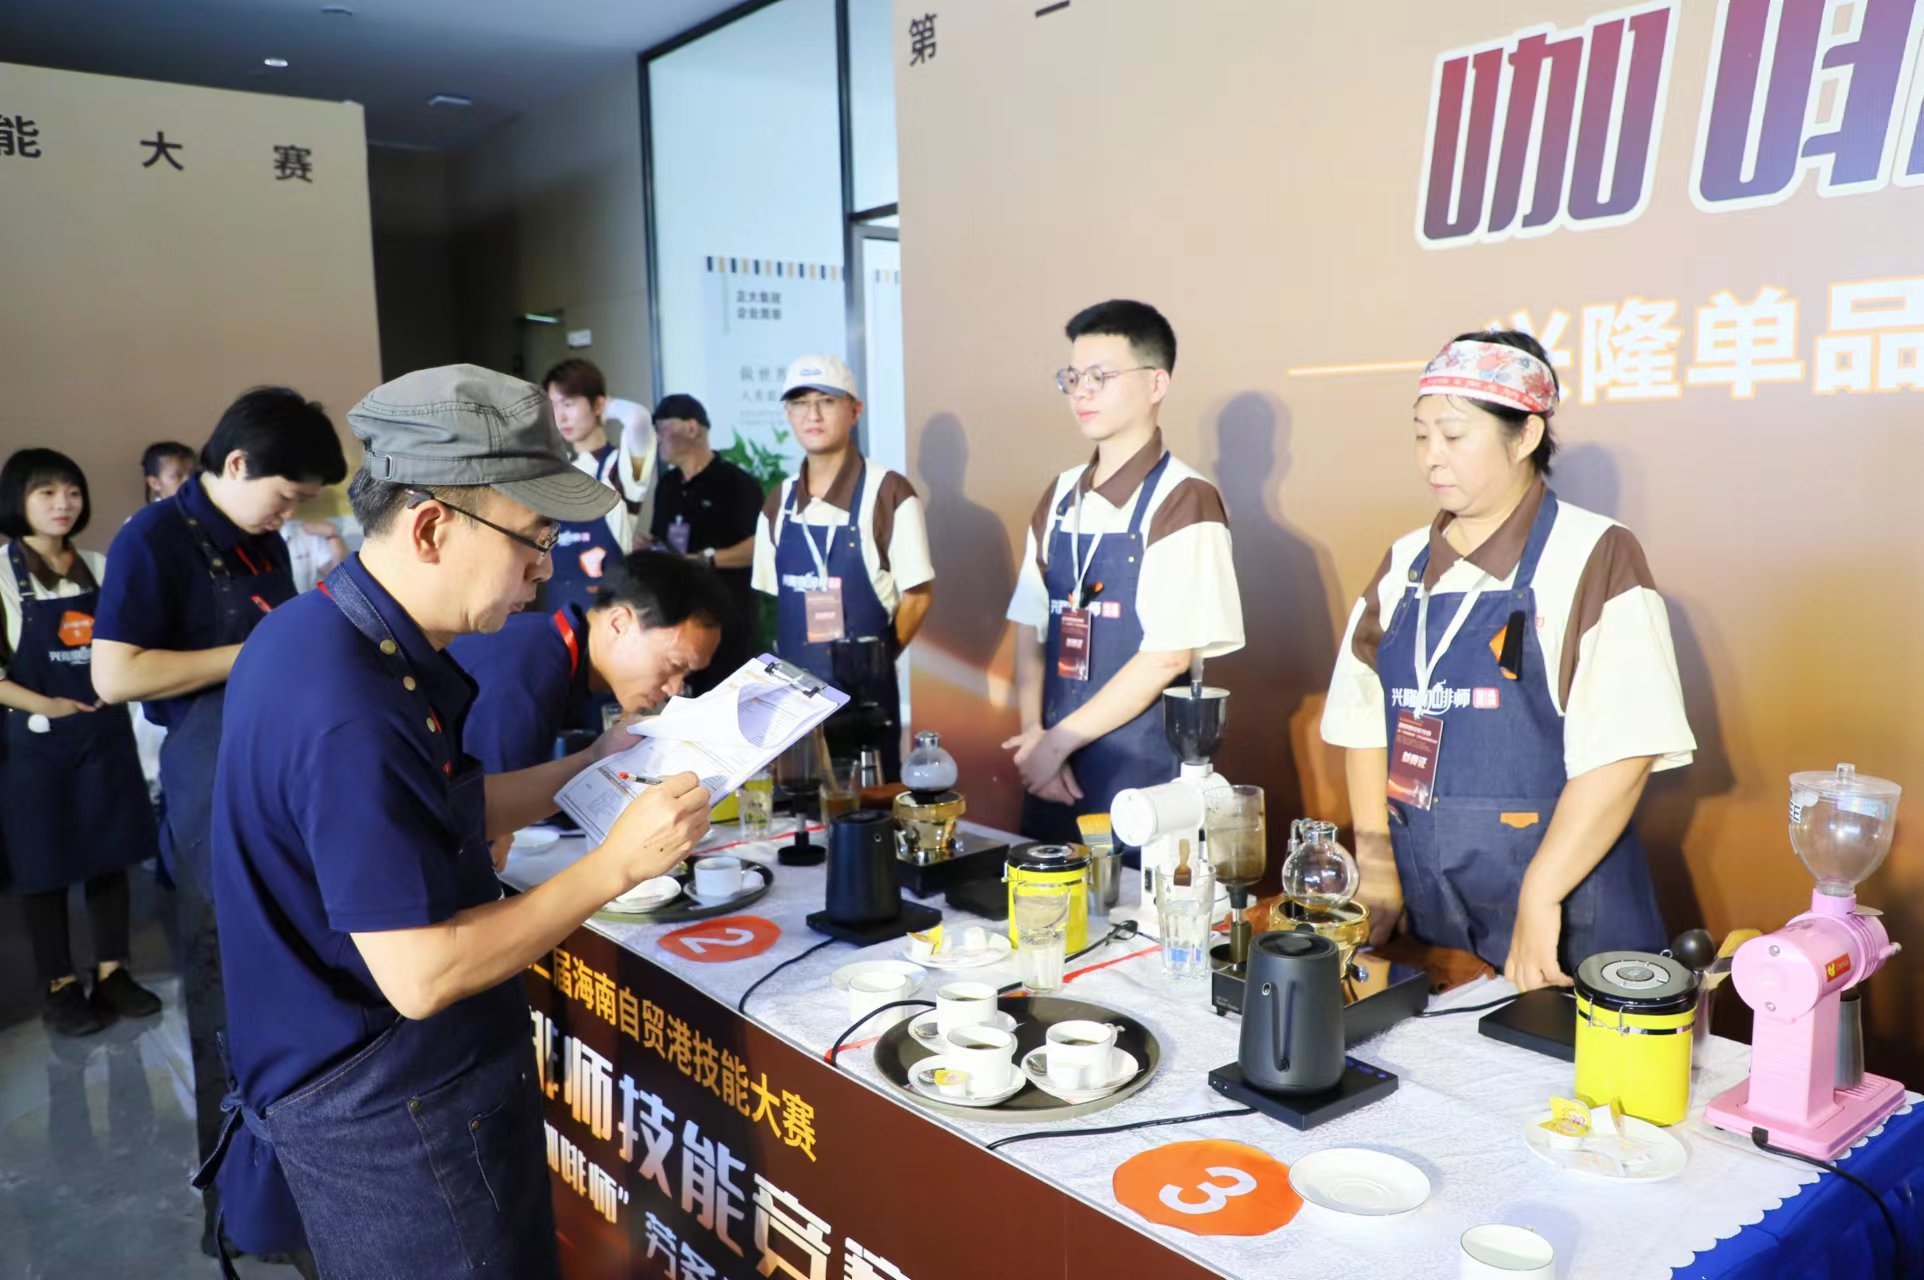 咖啡师技能竞赛在万宁市开幕